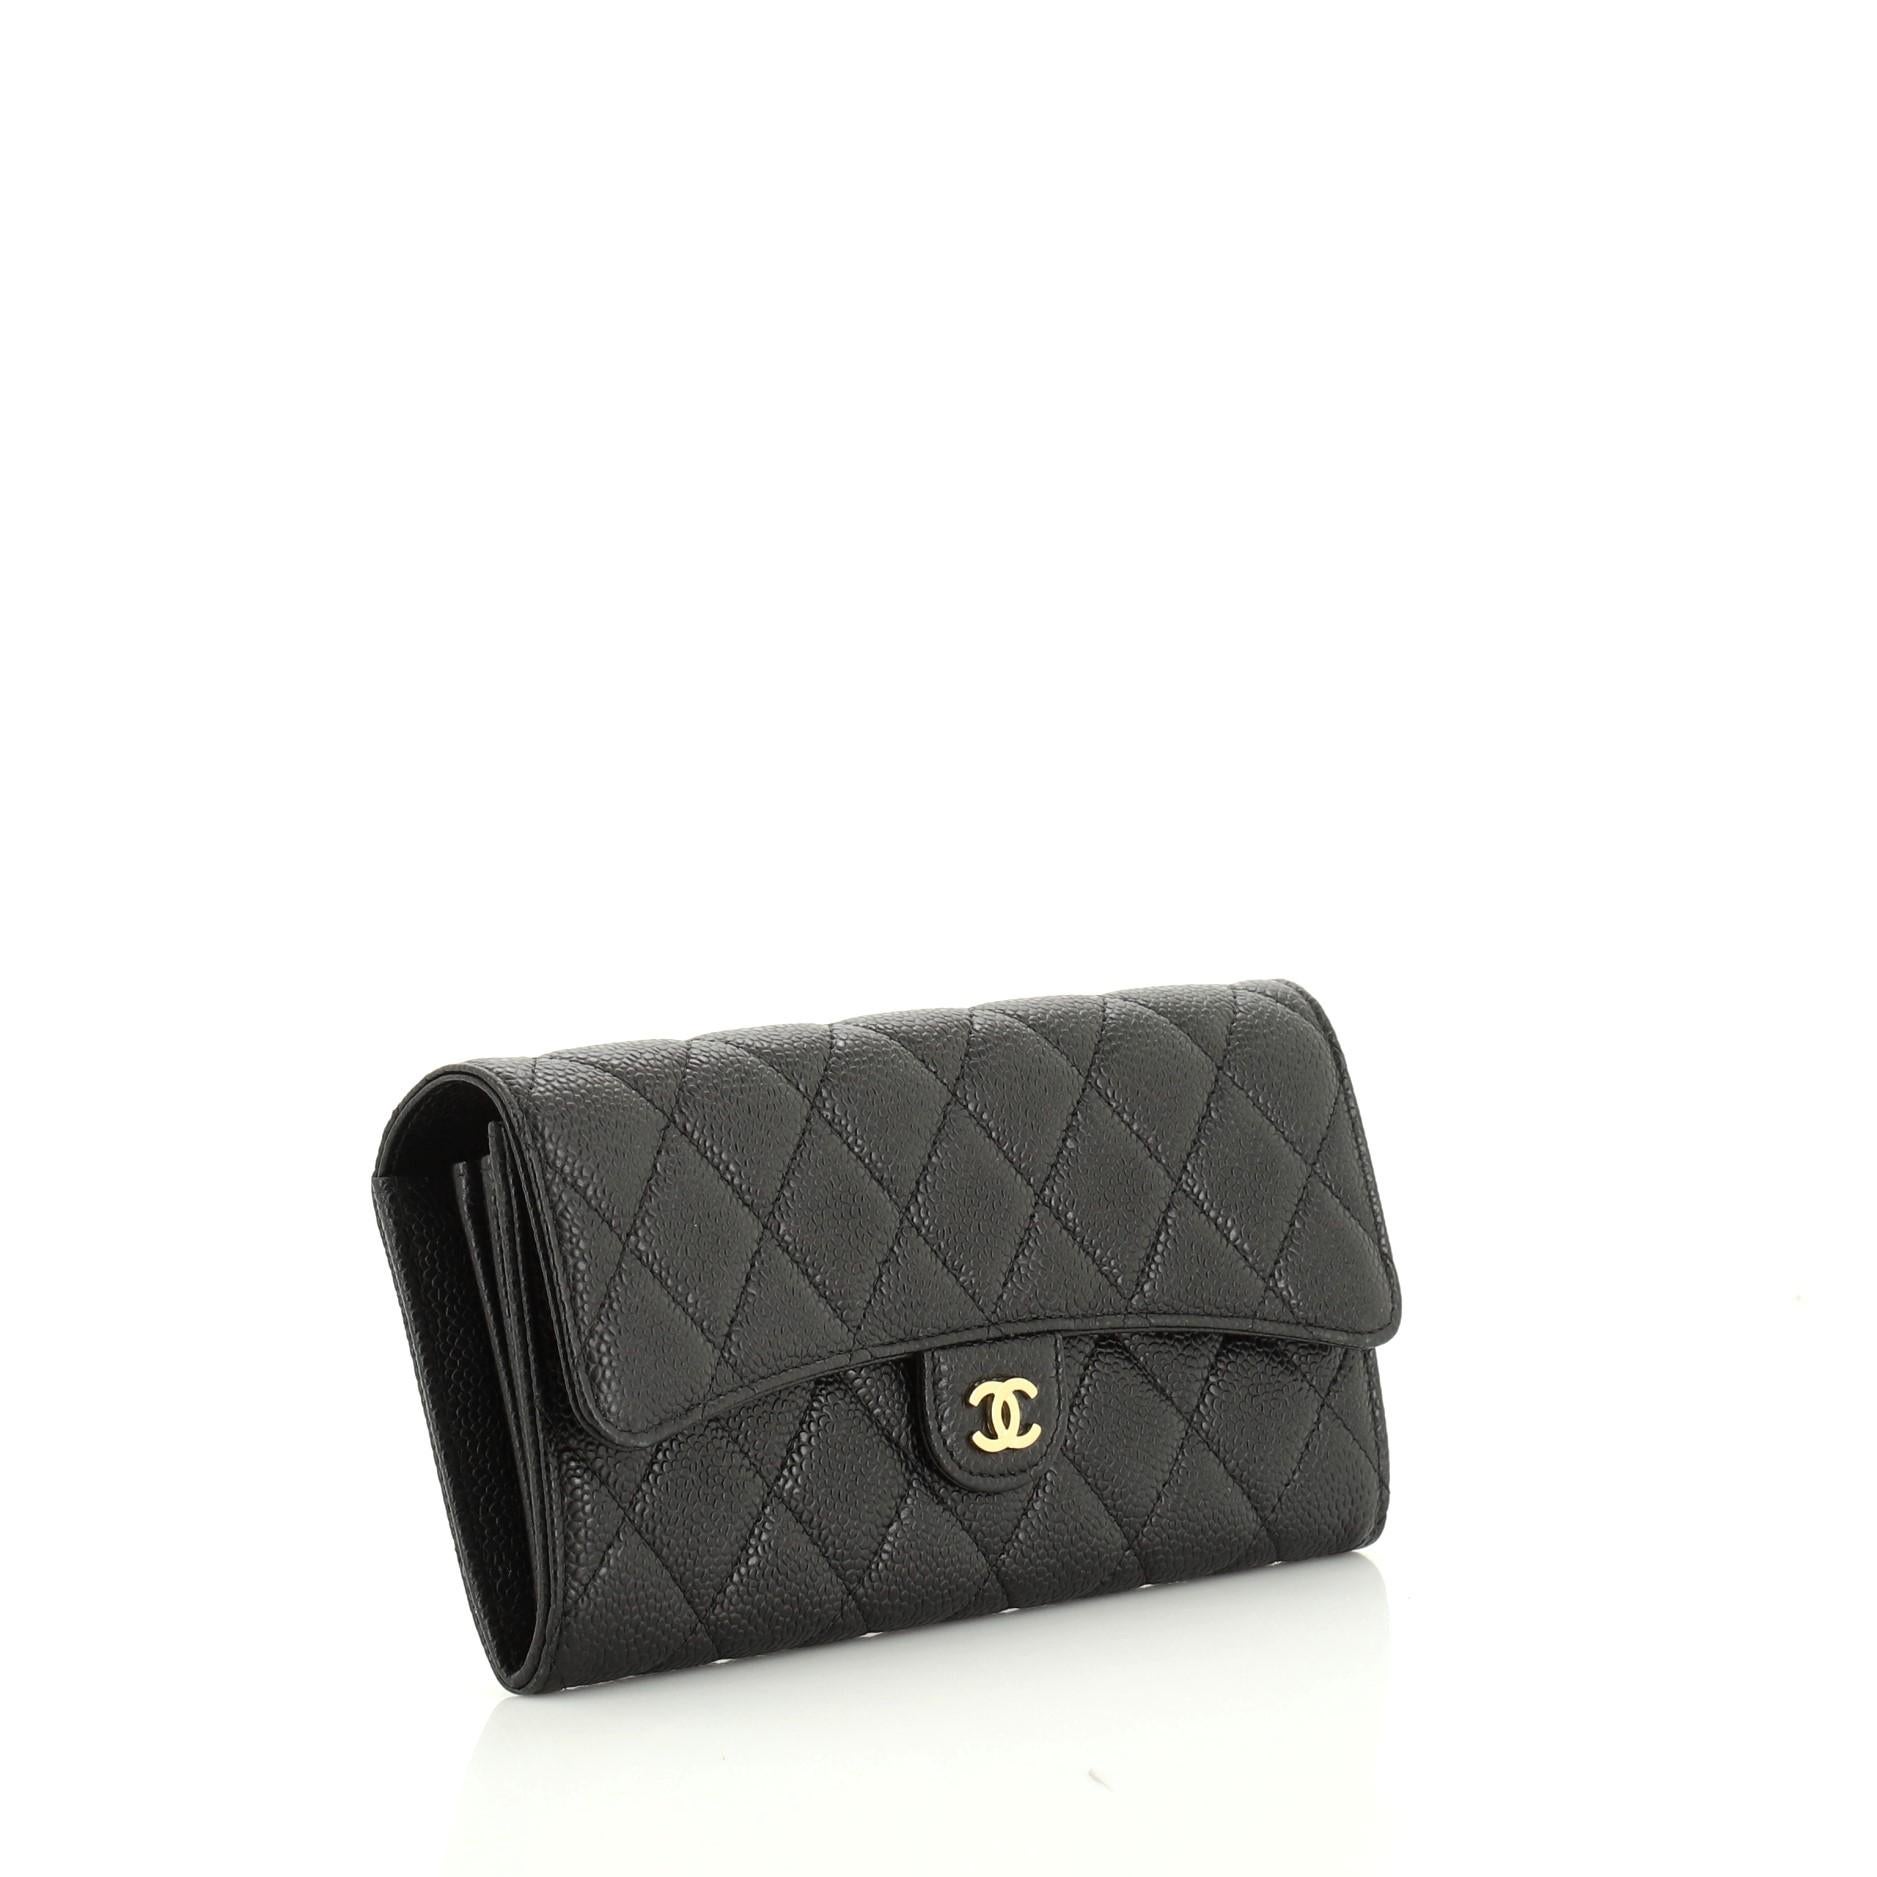 Black Chanel CC Gusset Classic Flap Wallet